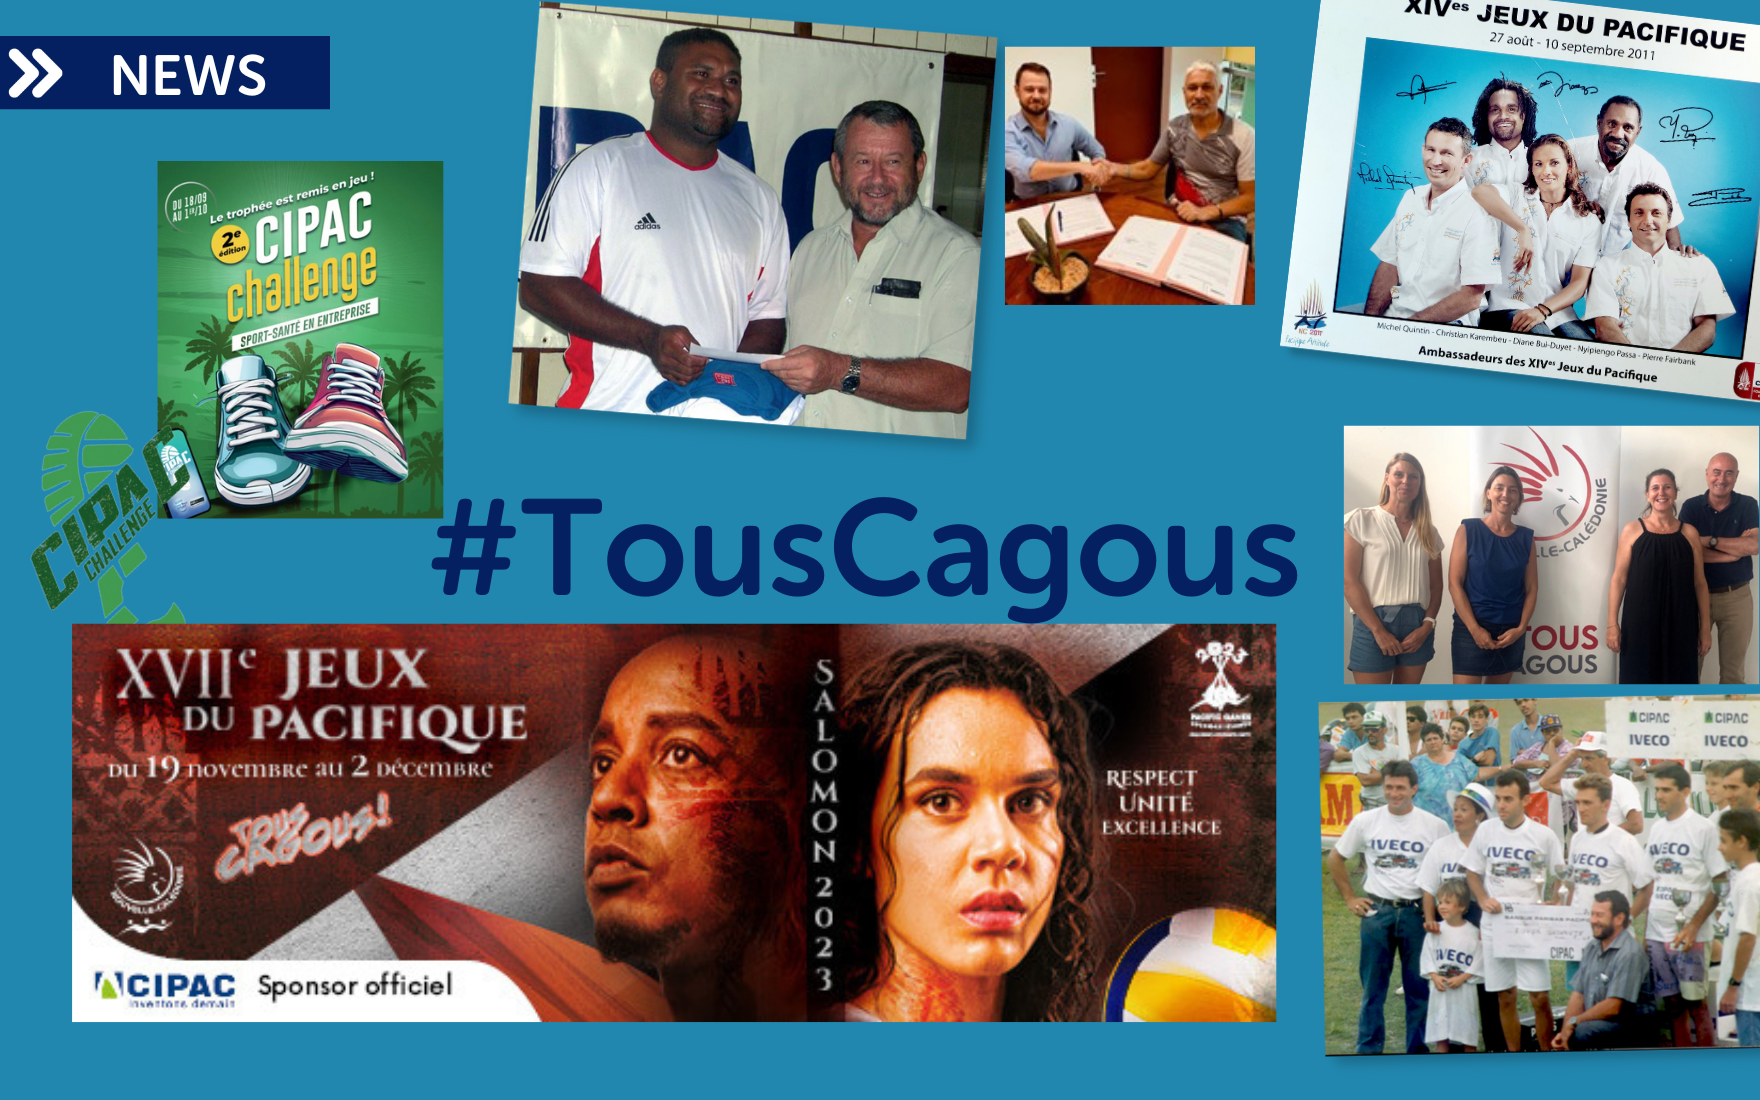 CIPAC sponsor officiel des Cagous